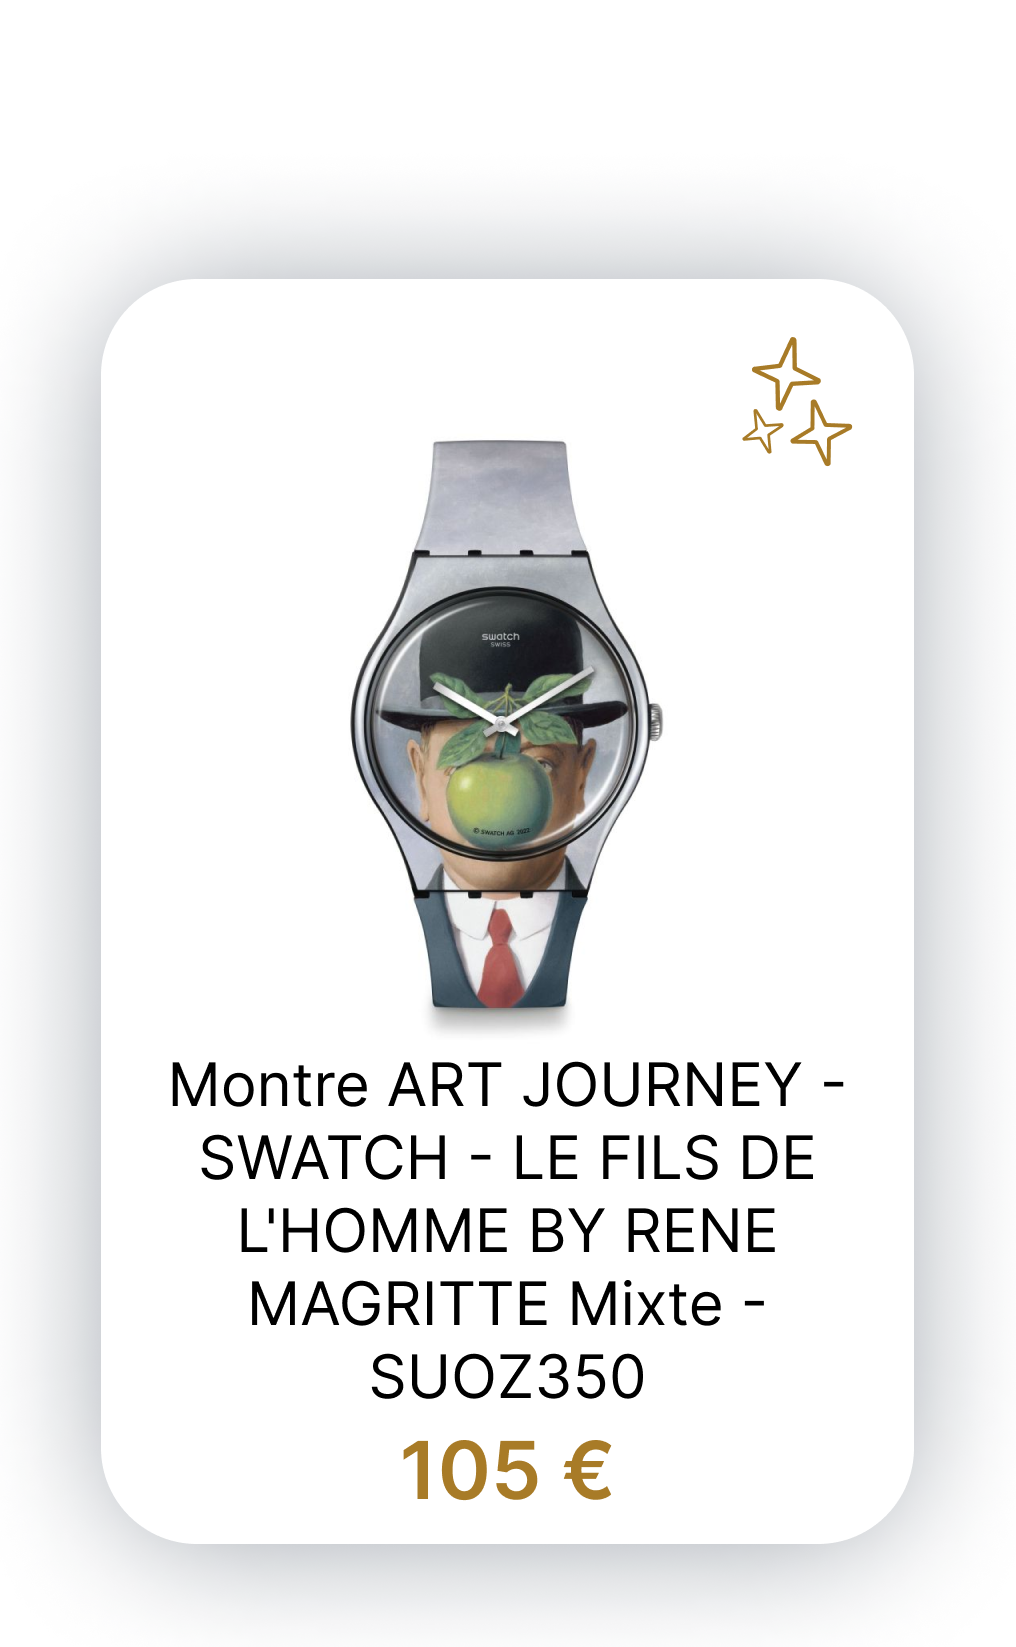 LE FILS DE L'HOMME BY RENE MAGRITTE - SUOZ350